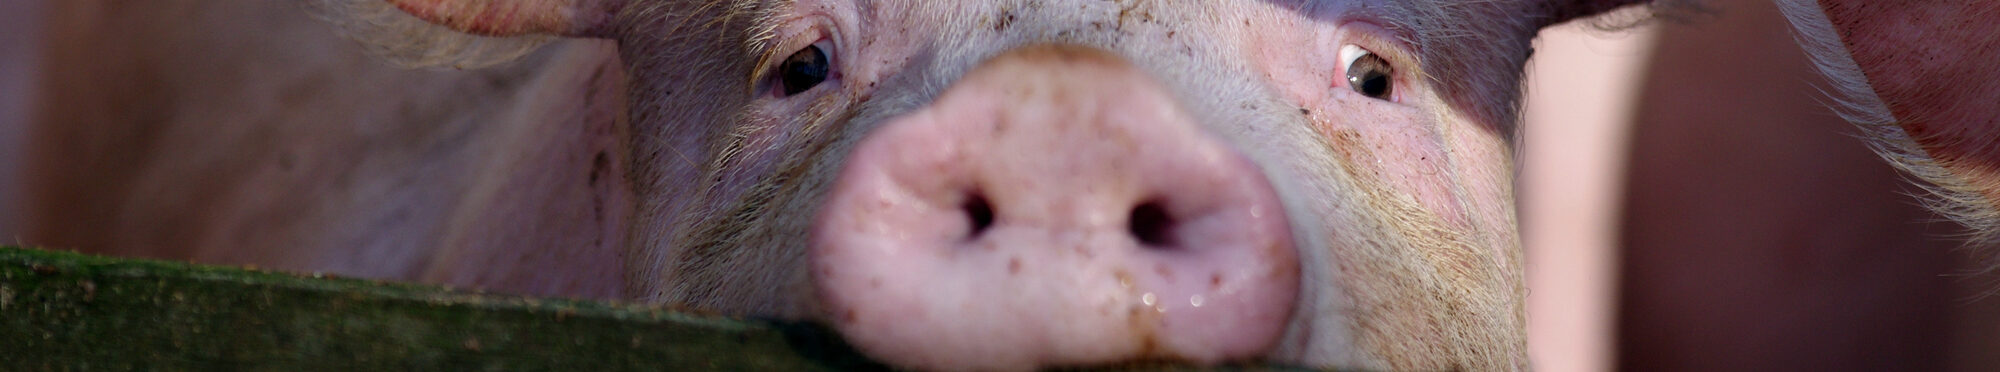 Ein Schwein hinter einem Zaun.